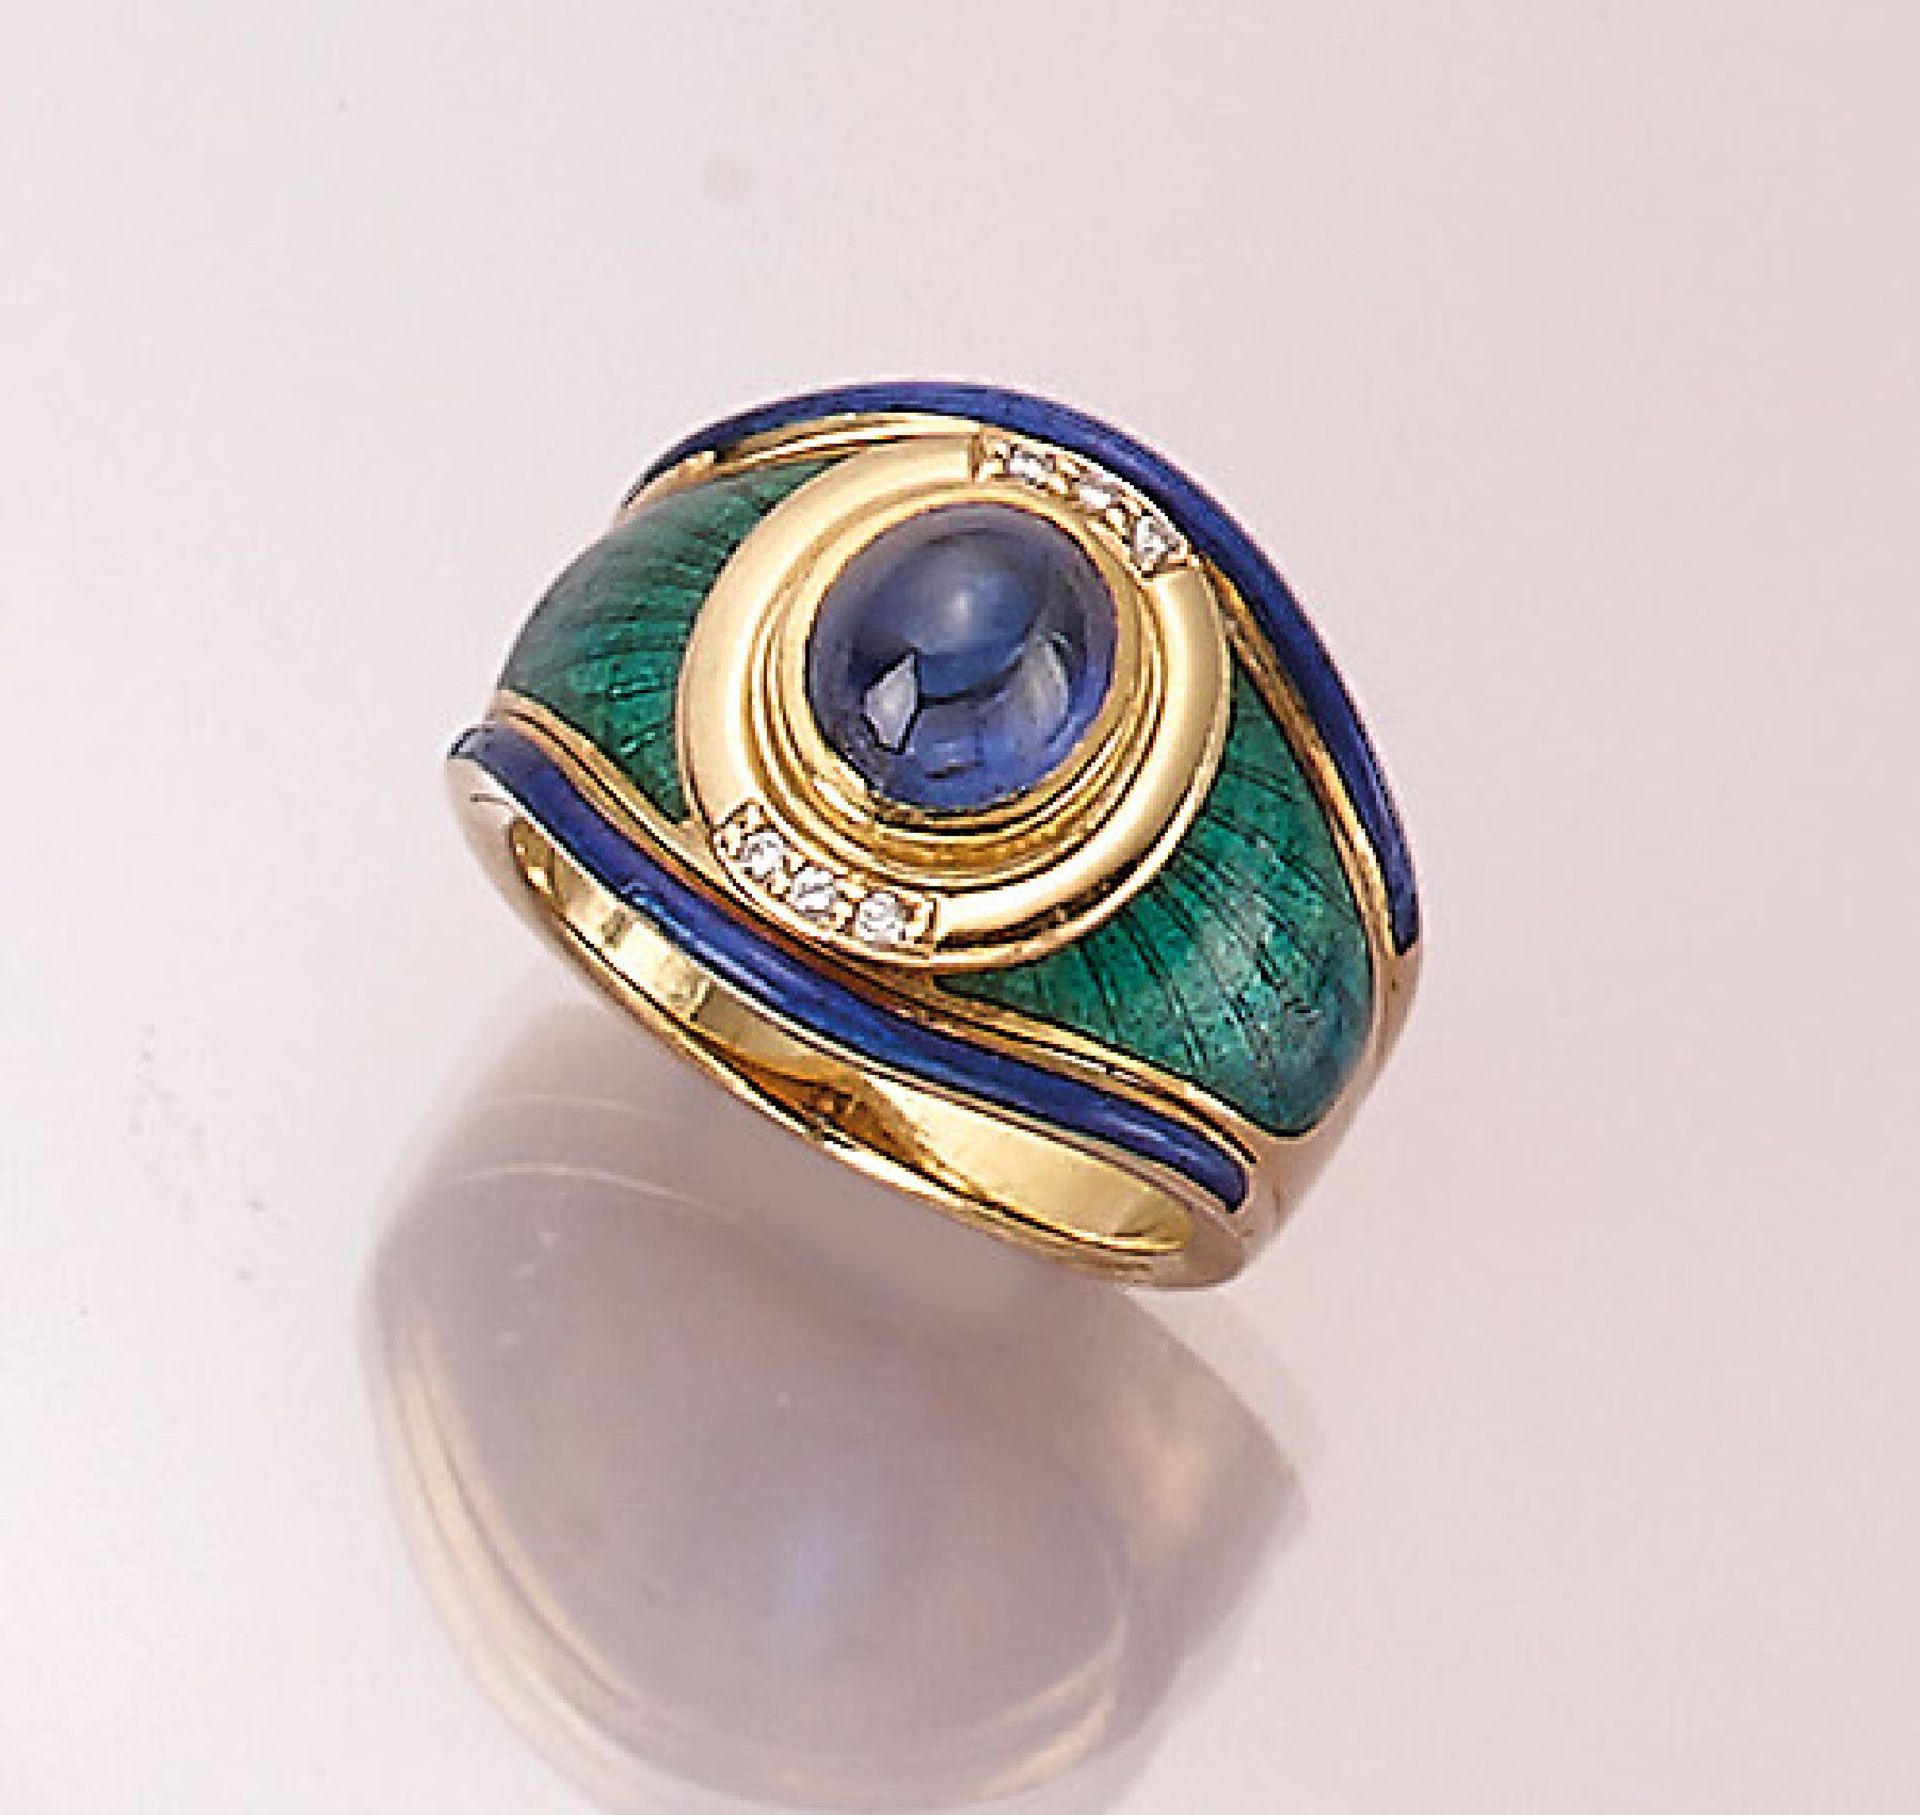 18 kt Gold Ring mit Email, Saphir und Brillanten, GG 750/000, mittig mit einem ovalen Saphircabochon